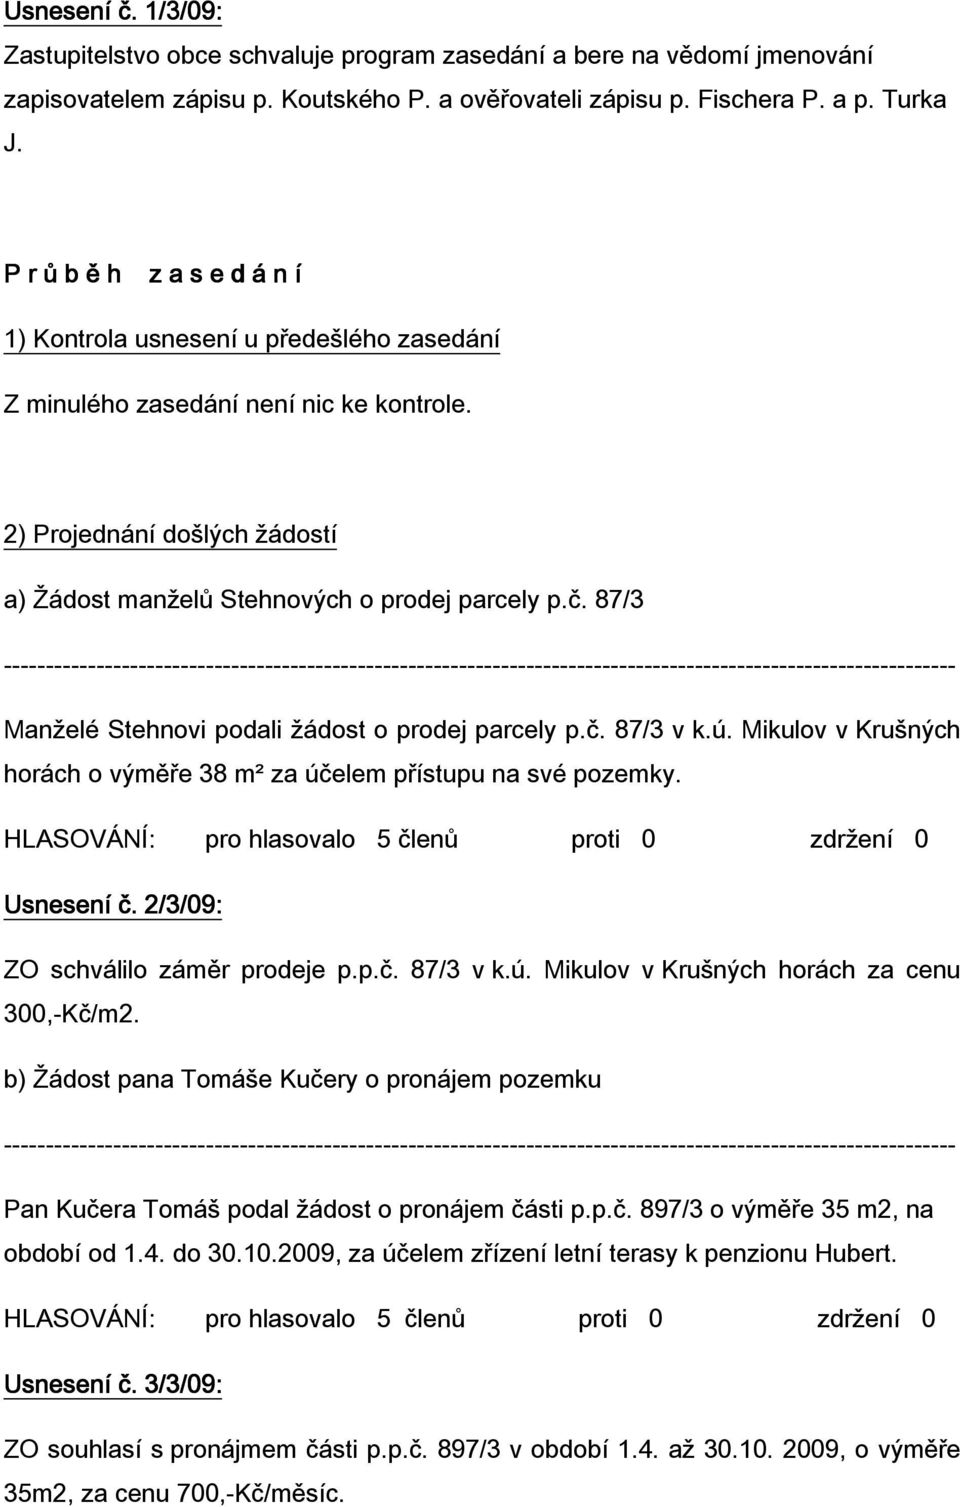 87/3 Manželé Stehnovi podali žádost o prodej parcely p.č. 87/3 v k.ú. Mikulov v Krušných horách o výměře 38 m² za účelem přístupu na své pozemky. Usnesení č. 2/3 ZO schválilo záměr prodeje p.p.č. 87/3 v k.ú. Mikulov v Krušných horách za cenu 300,-Kč/m2.